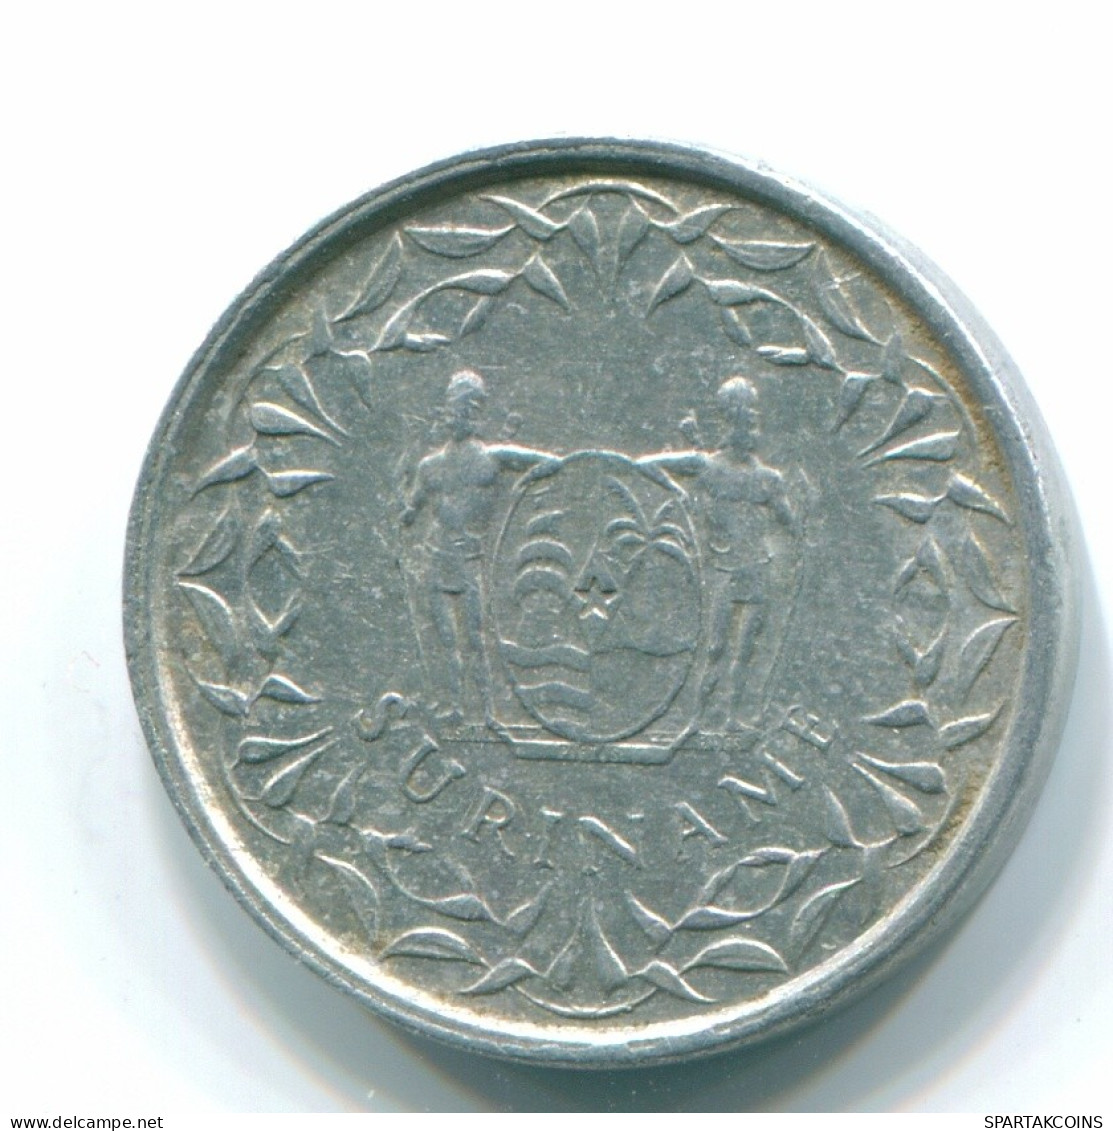 1 CENT 1975 SURINAME NEERLANDÉS NETHERLANDS Aluminium Colonial Moneda #S11409.E.A - Surinam 1975 - ...